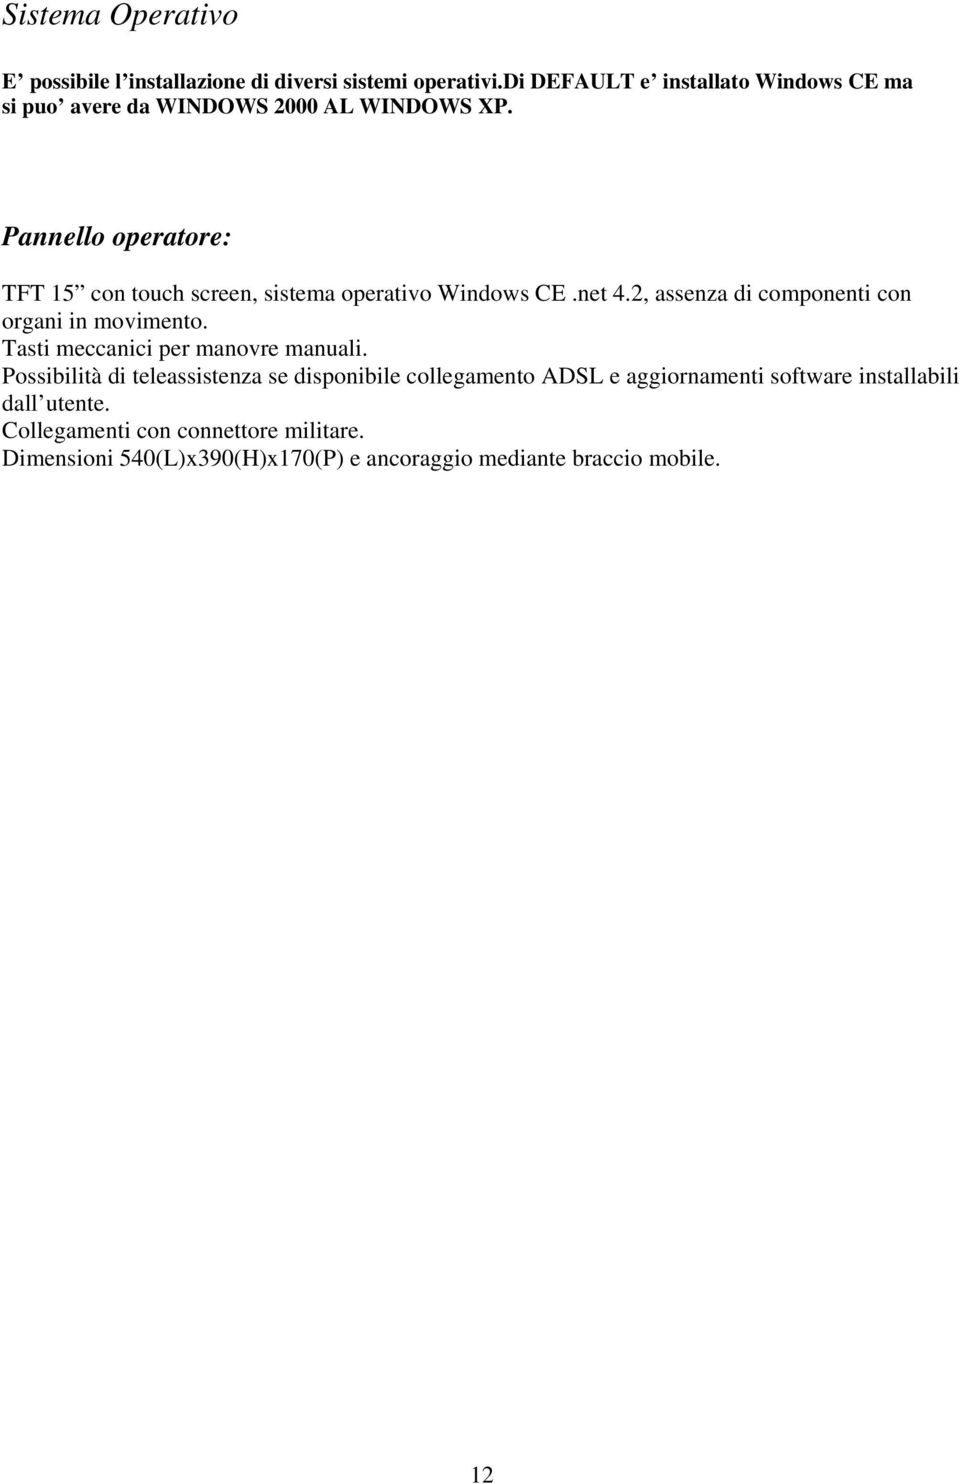 Pannello operatore: TFT 15 con touch screen, sistema operativo Windows CE.net 4.2, assenza di componenti con organi in movimento.